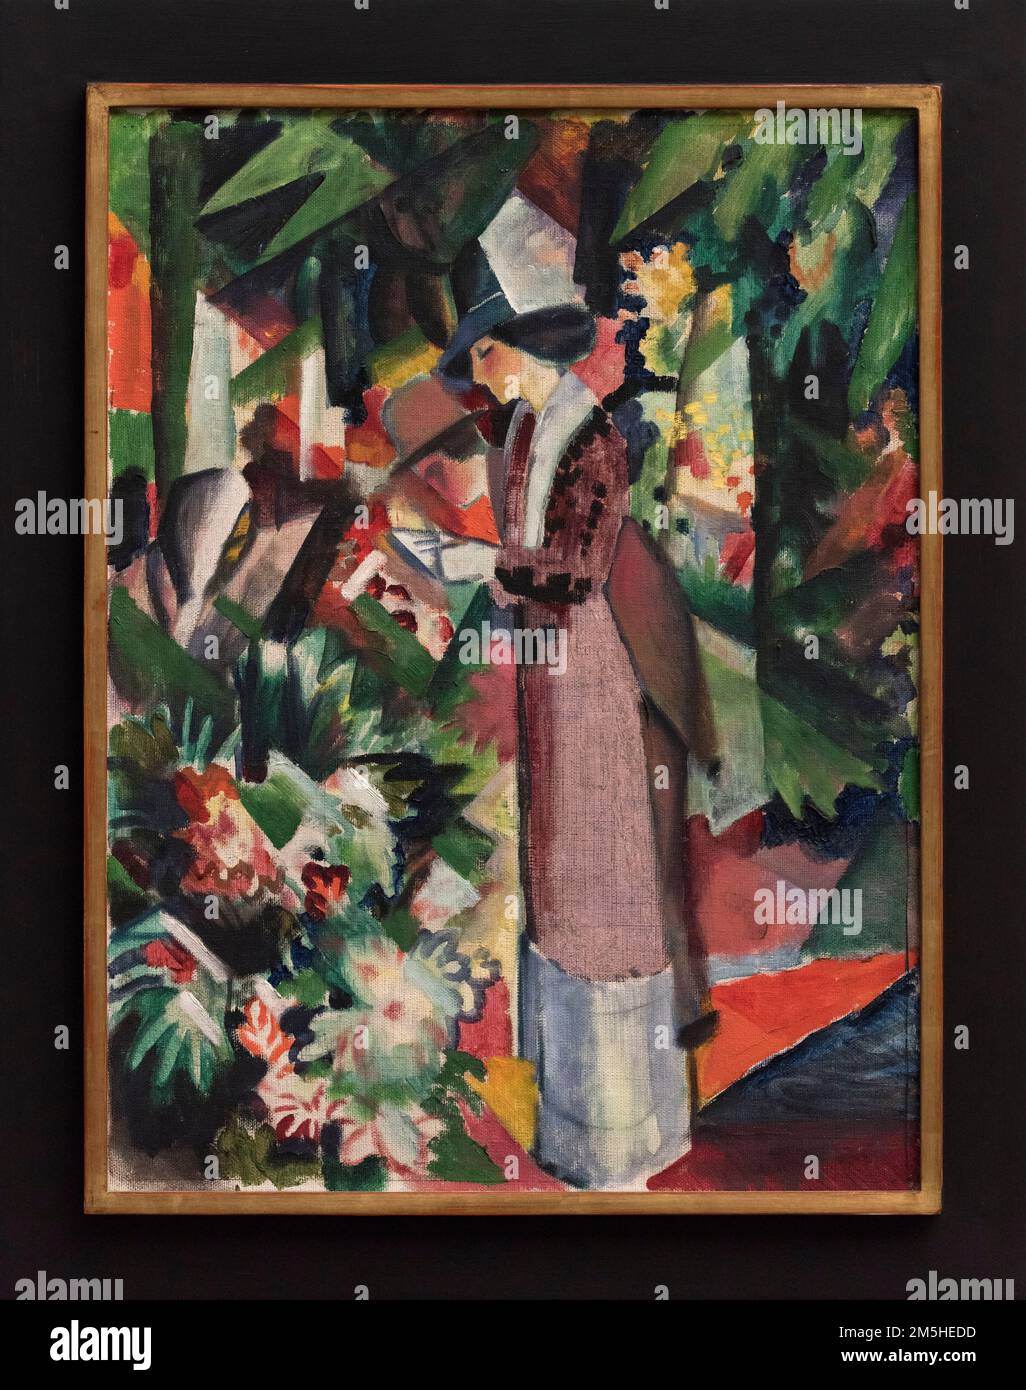 Agosto Macke (1887-1914), passeggiata tra i fiori, 1912. Spaziergang a Blumen. Alte Nationalgalerie, Berlino. Olio su tela Foto Stock